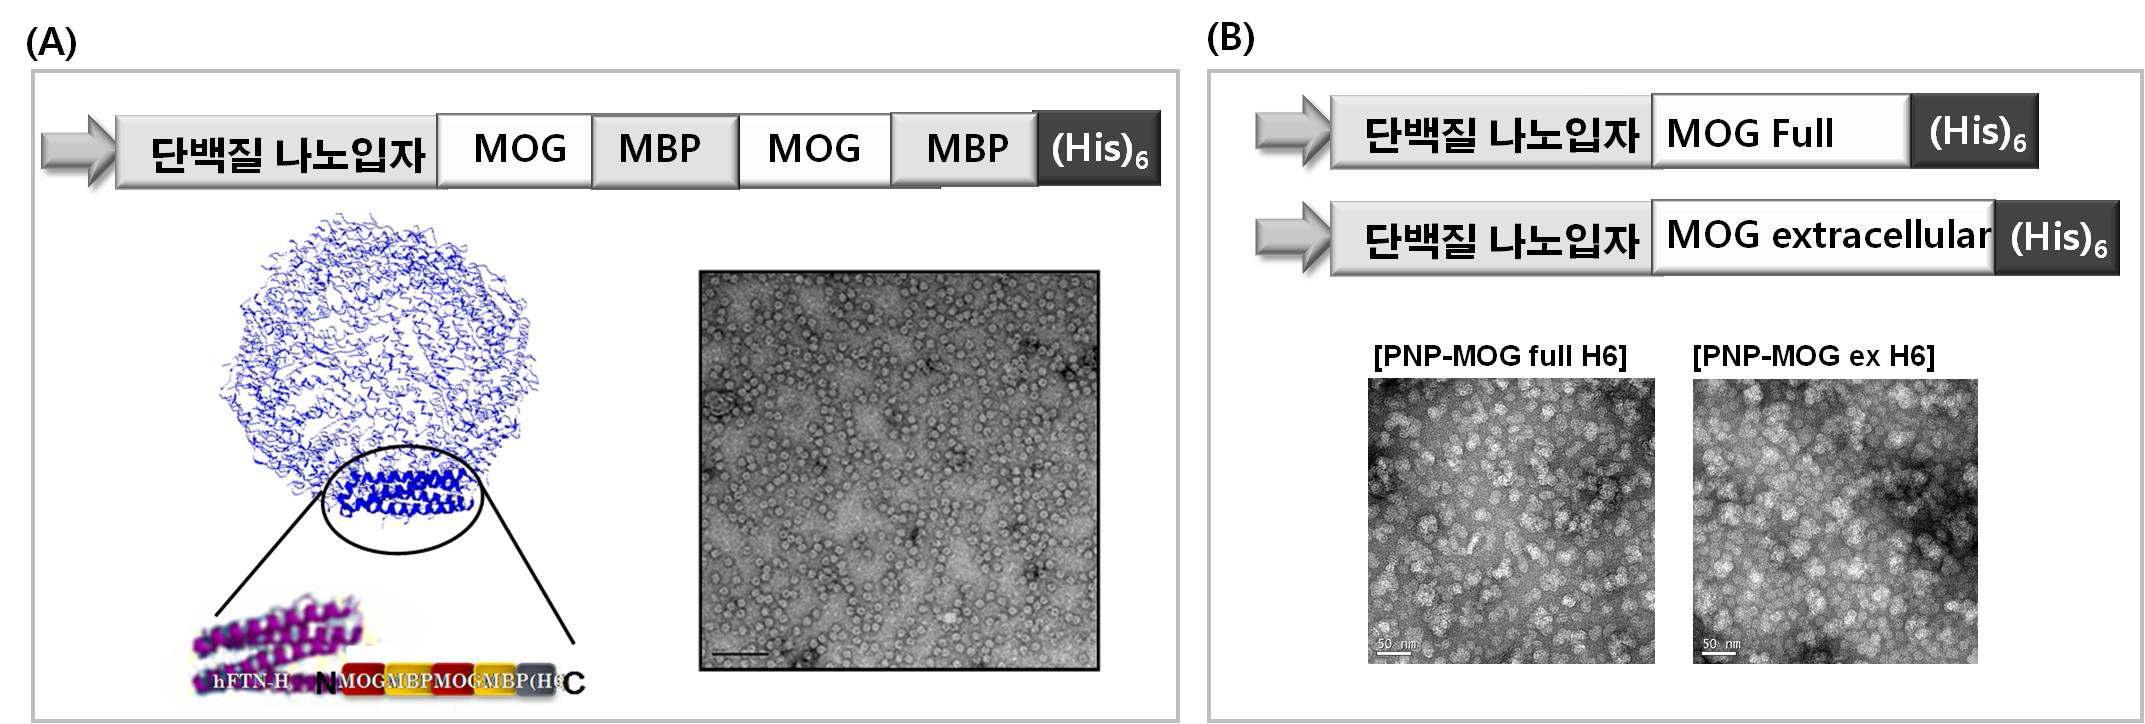 다발성 경화증 진단을 위한 MOG 표출 단백질 나노입자의발현 벡터 및 TEM 사진 (A) MOG, MBP 펩타이드 동시 표출 단백지리 나노입자 발현 벡터 및 TEM 사진, (B) MOG 단백질 전체 도메인과 , extracelluar 도메인을 융합 발현한 단백질 나노입자 프로브 발현 벡터 및 TEM 사진.